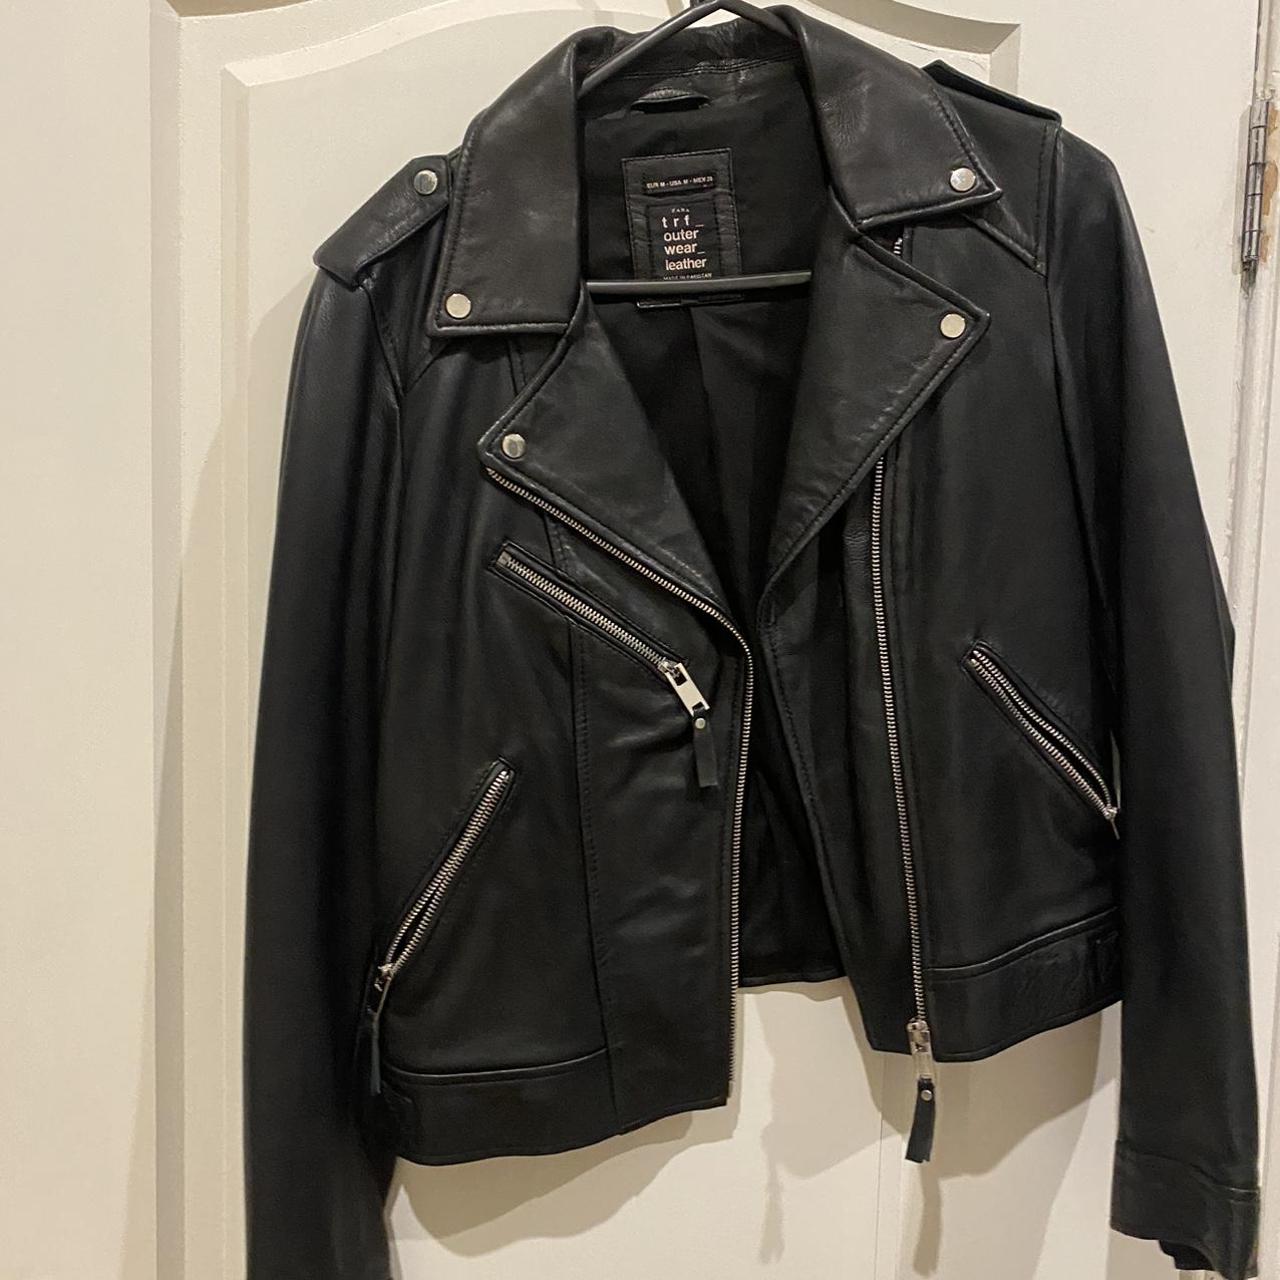 Genuine leather jacket Zara size 10 - Depop